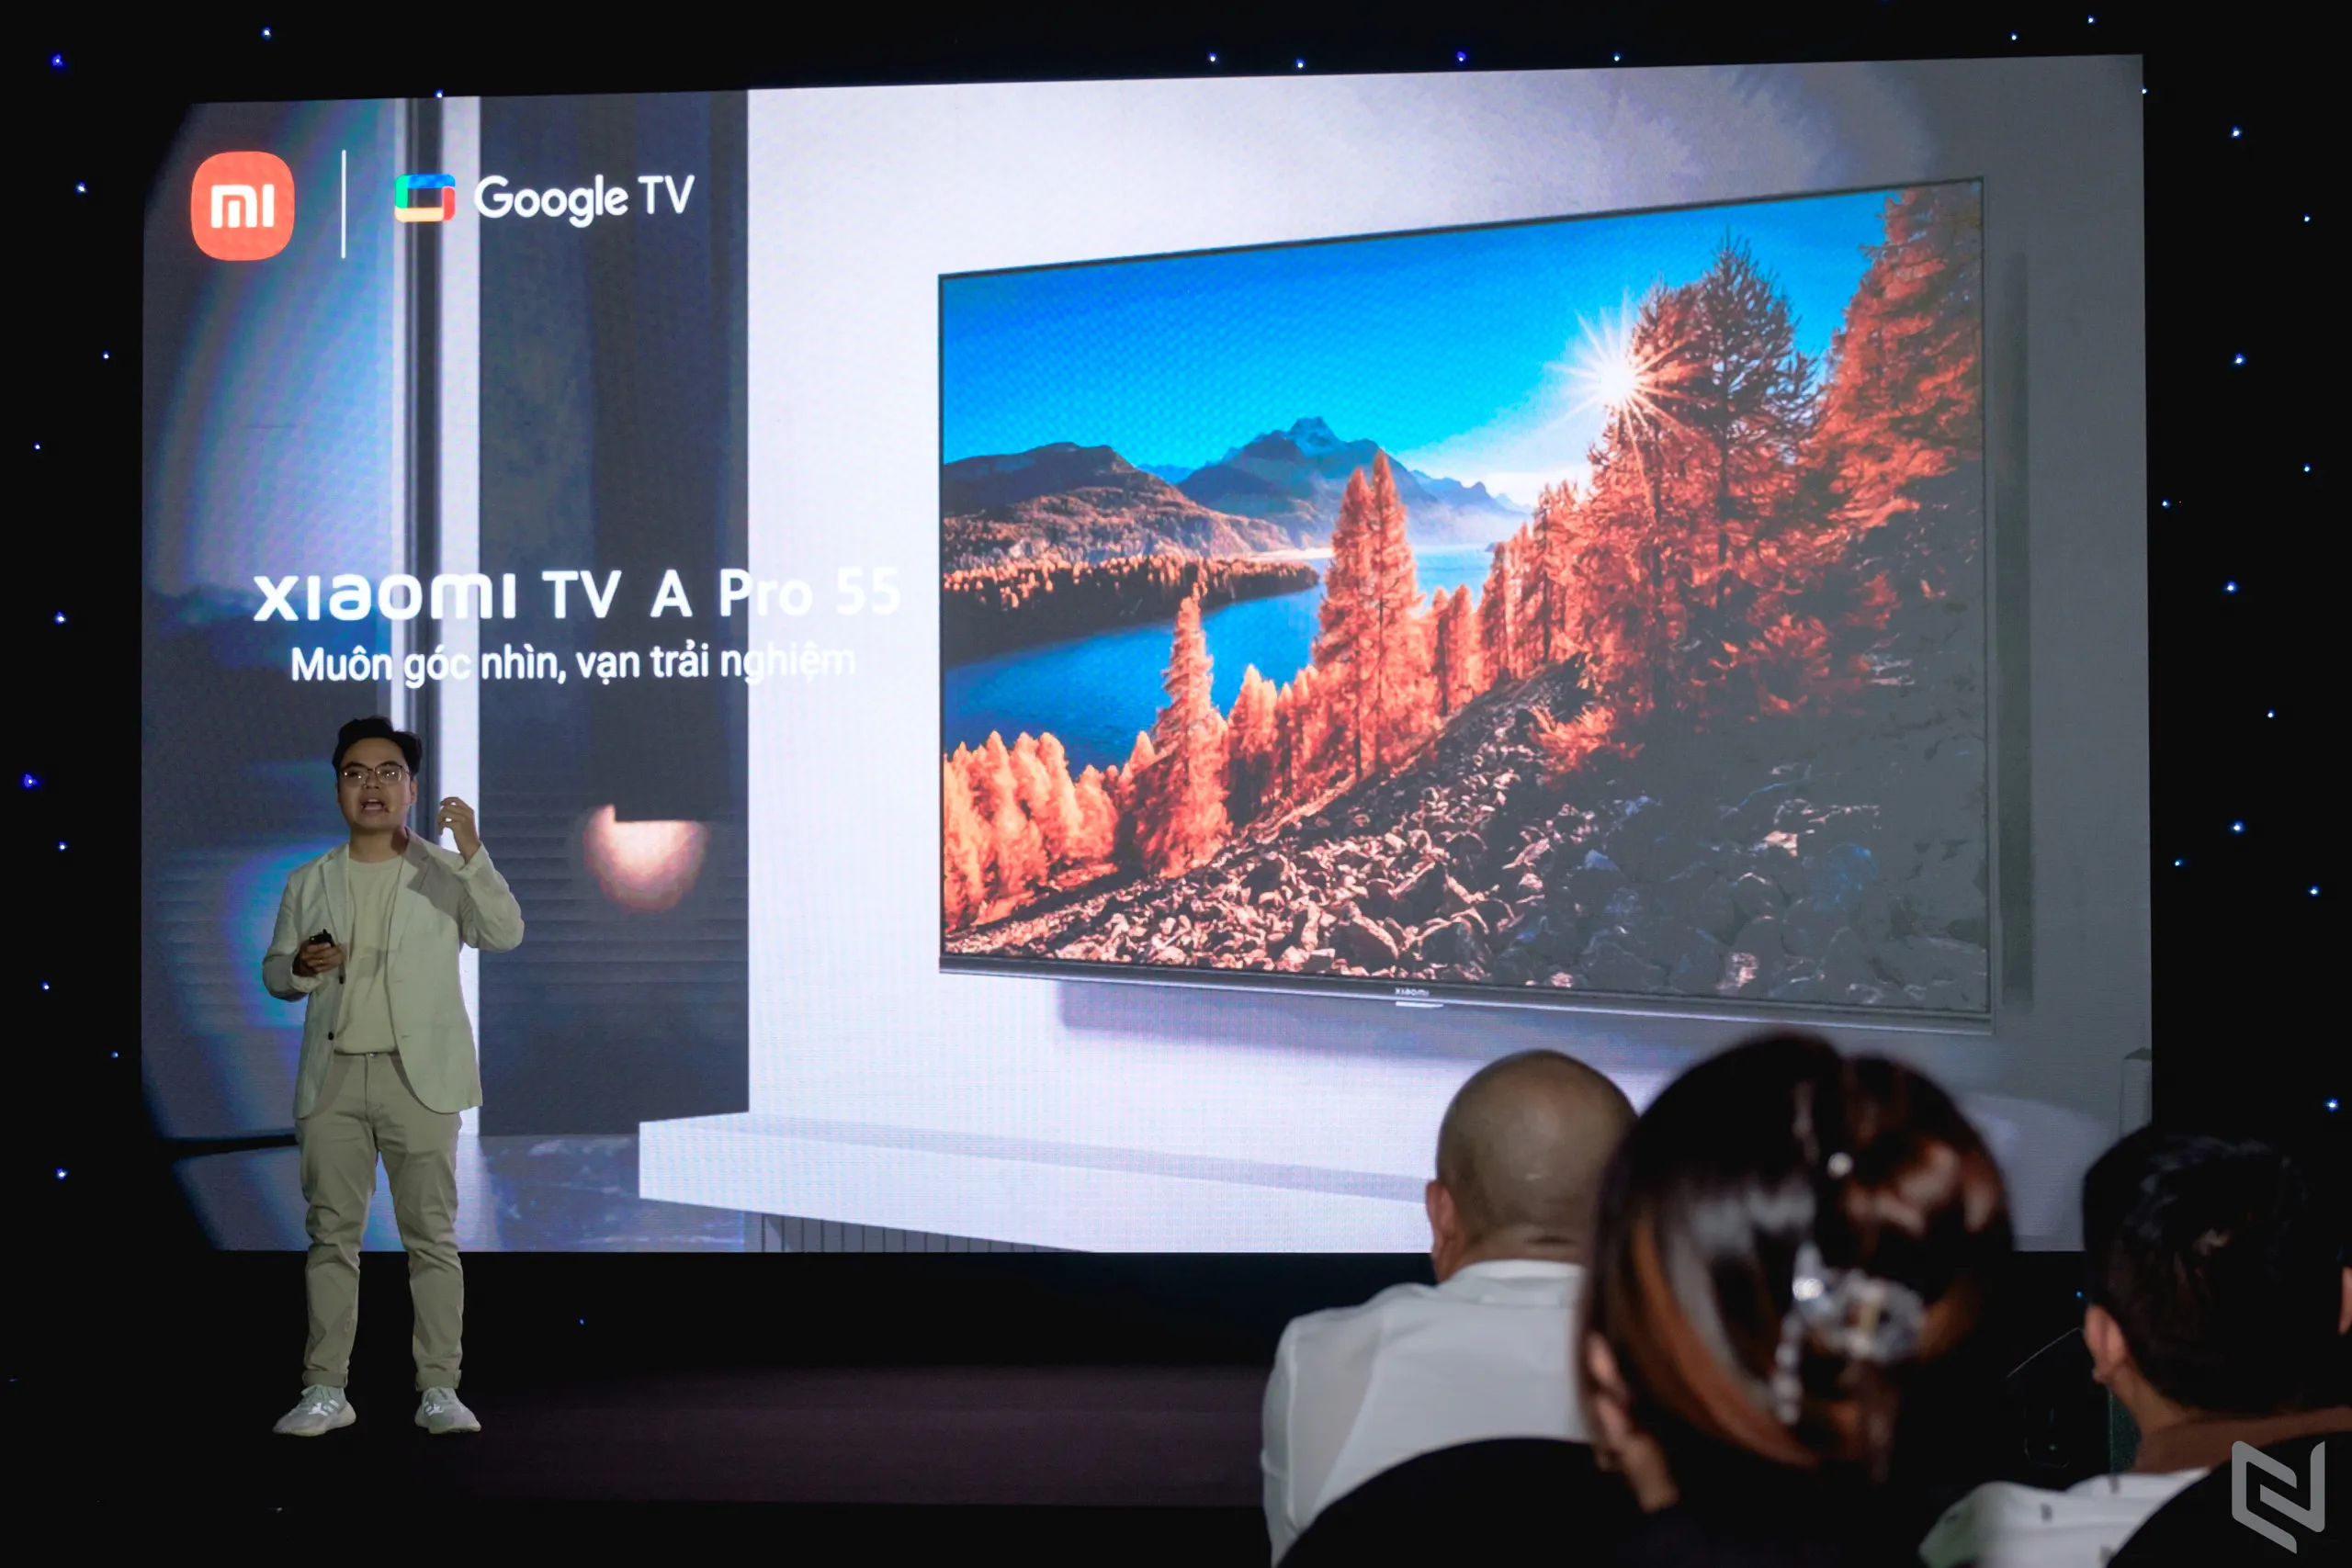 TV Xiaomi A và TV Xiaomi A Pro ra mắt, màn hình 4K cùng nhiều tính năng thông minh vượt trội